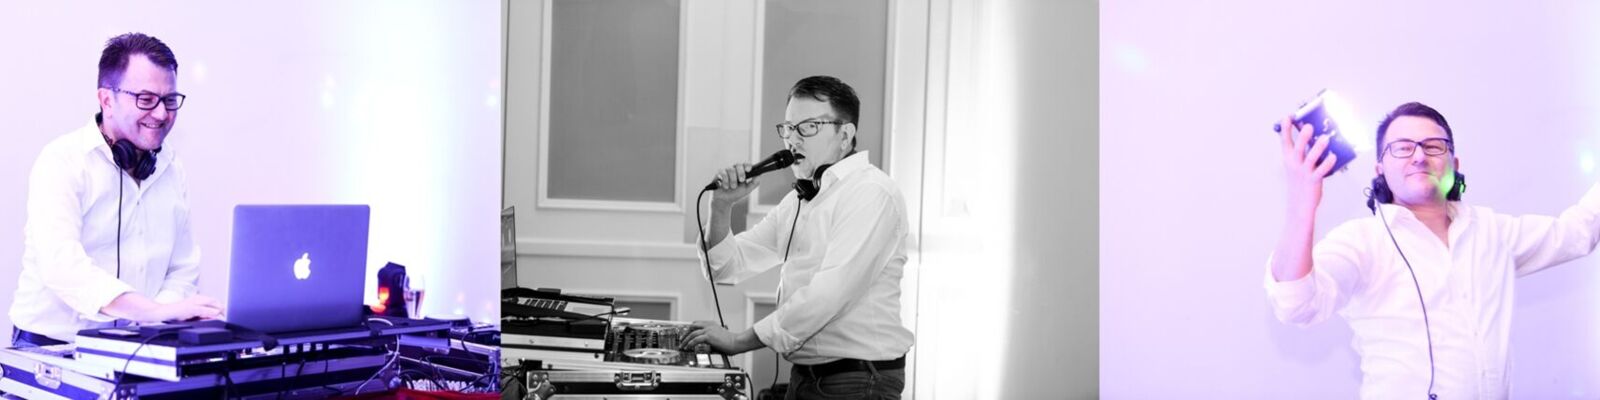 Hochzeits-DJ buchen Friedberg